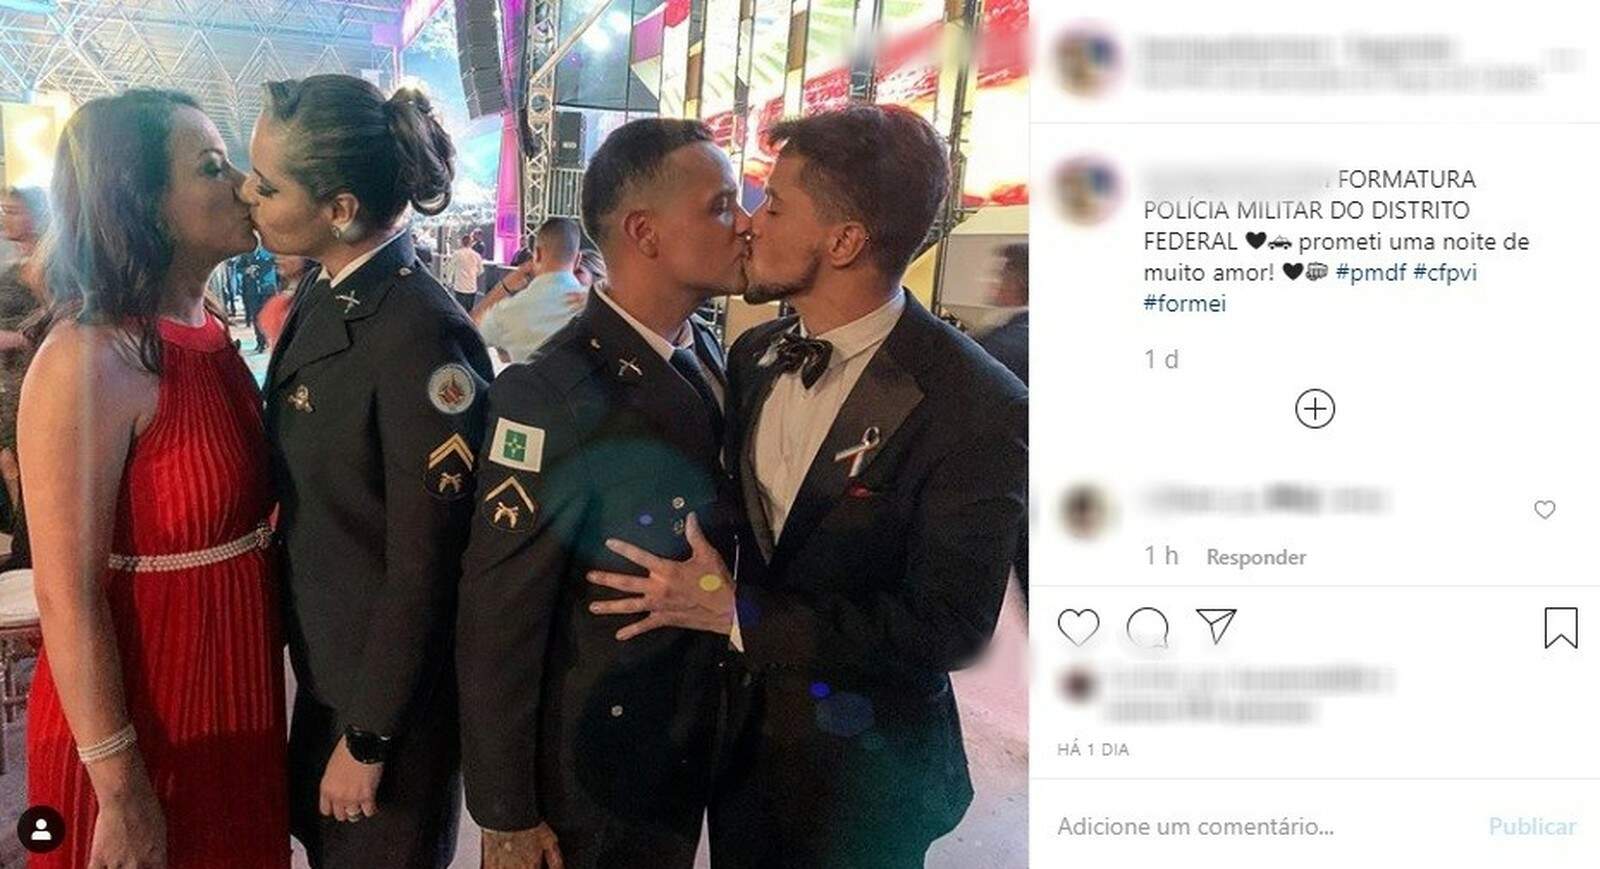 Foto de casais se beijando gerou polêmica